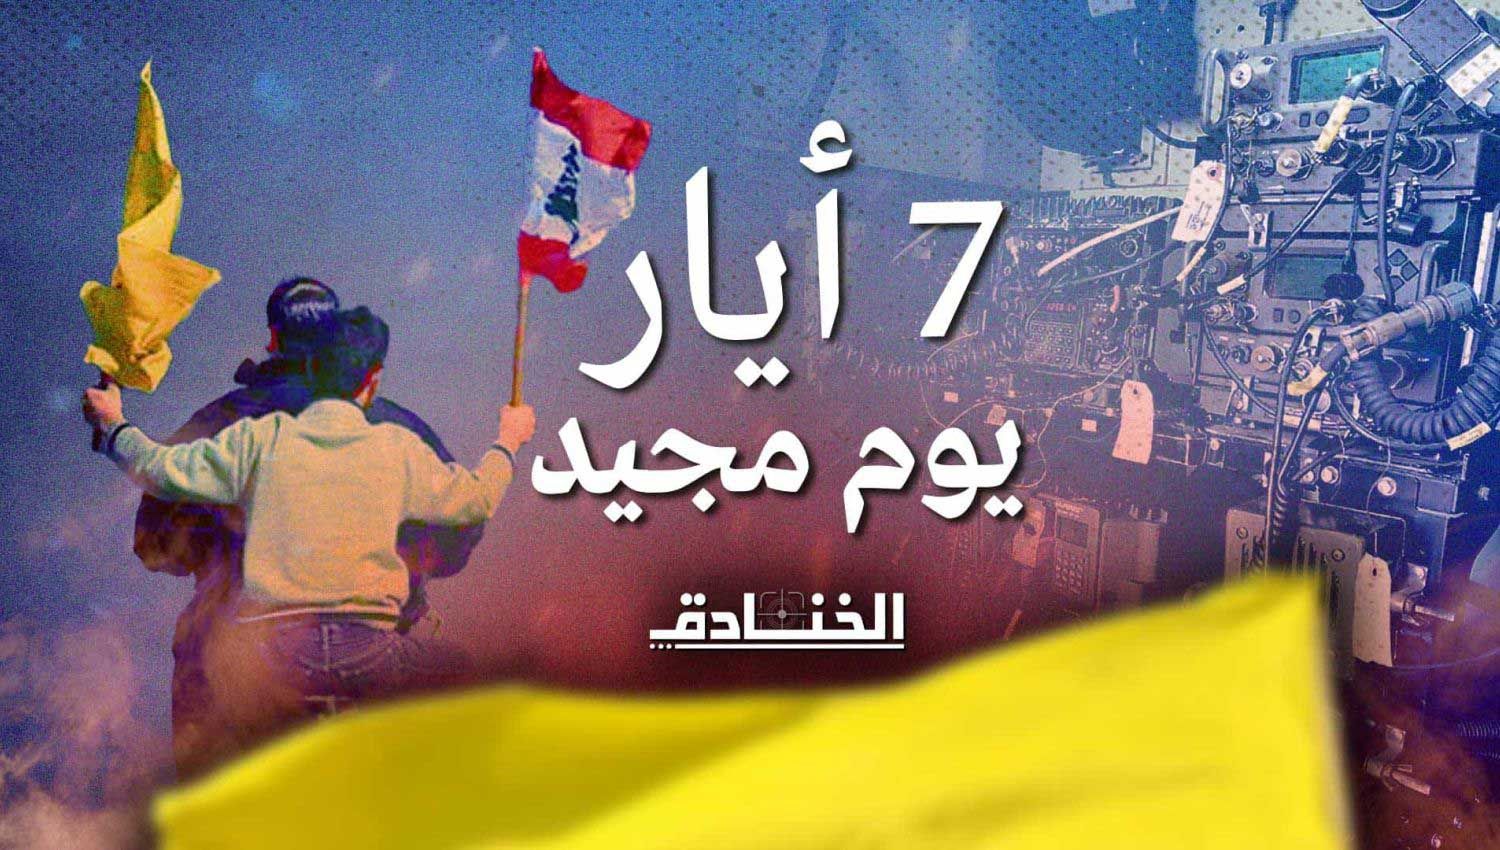 7 أيار: يوم مجيد لن ينساه اللبنانيون